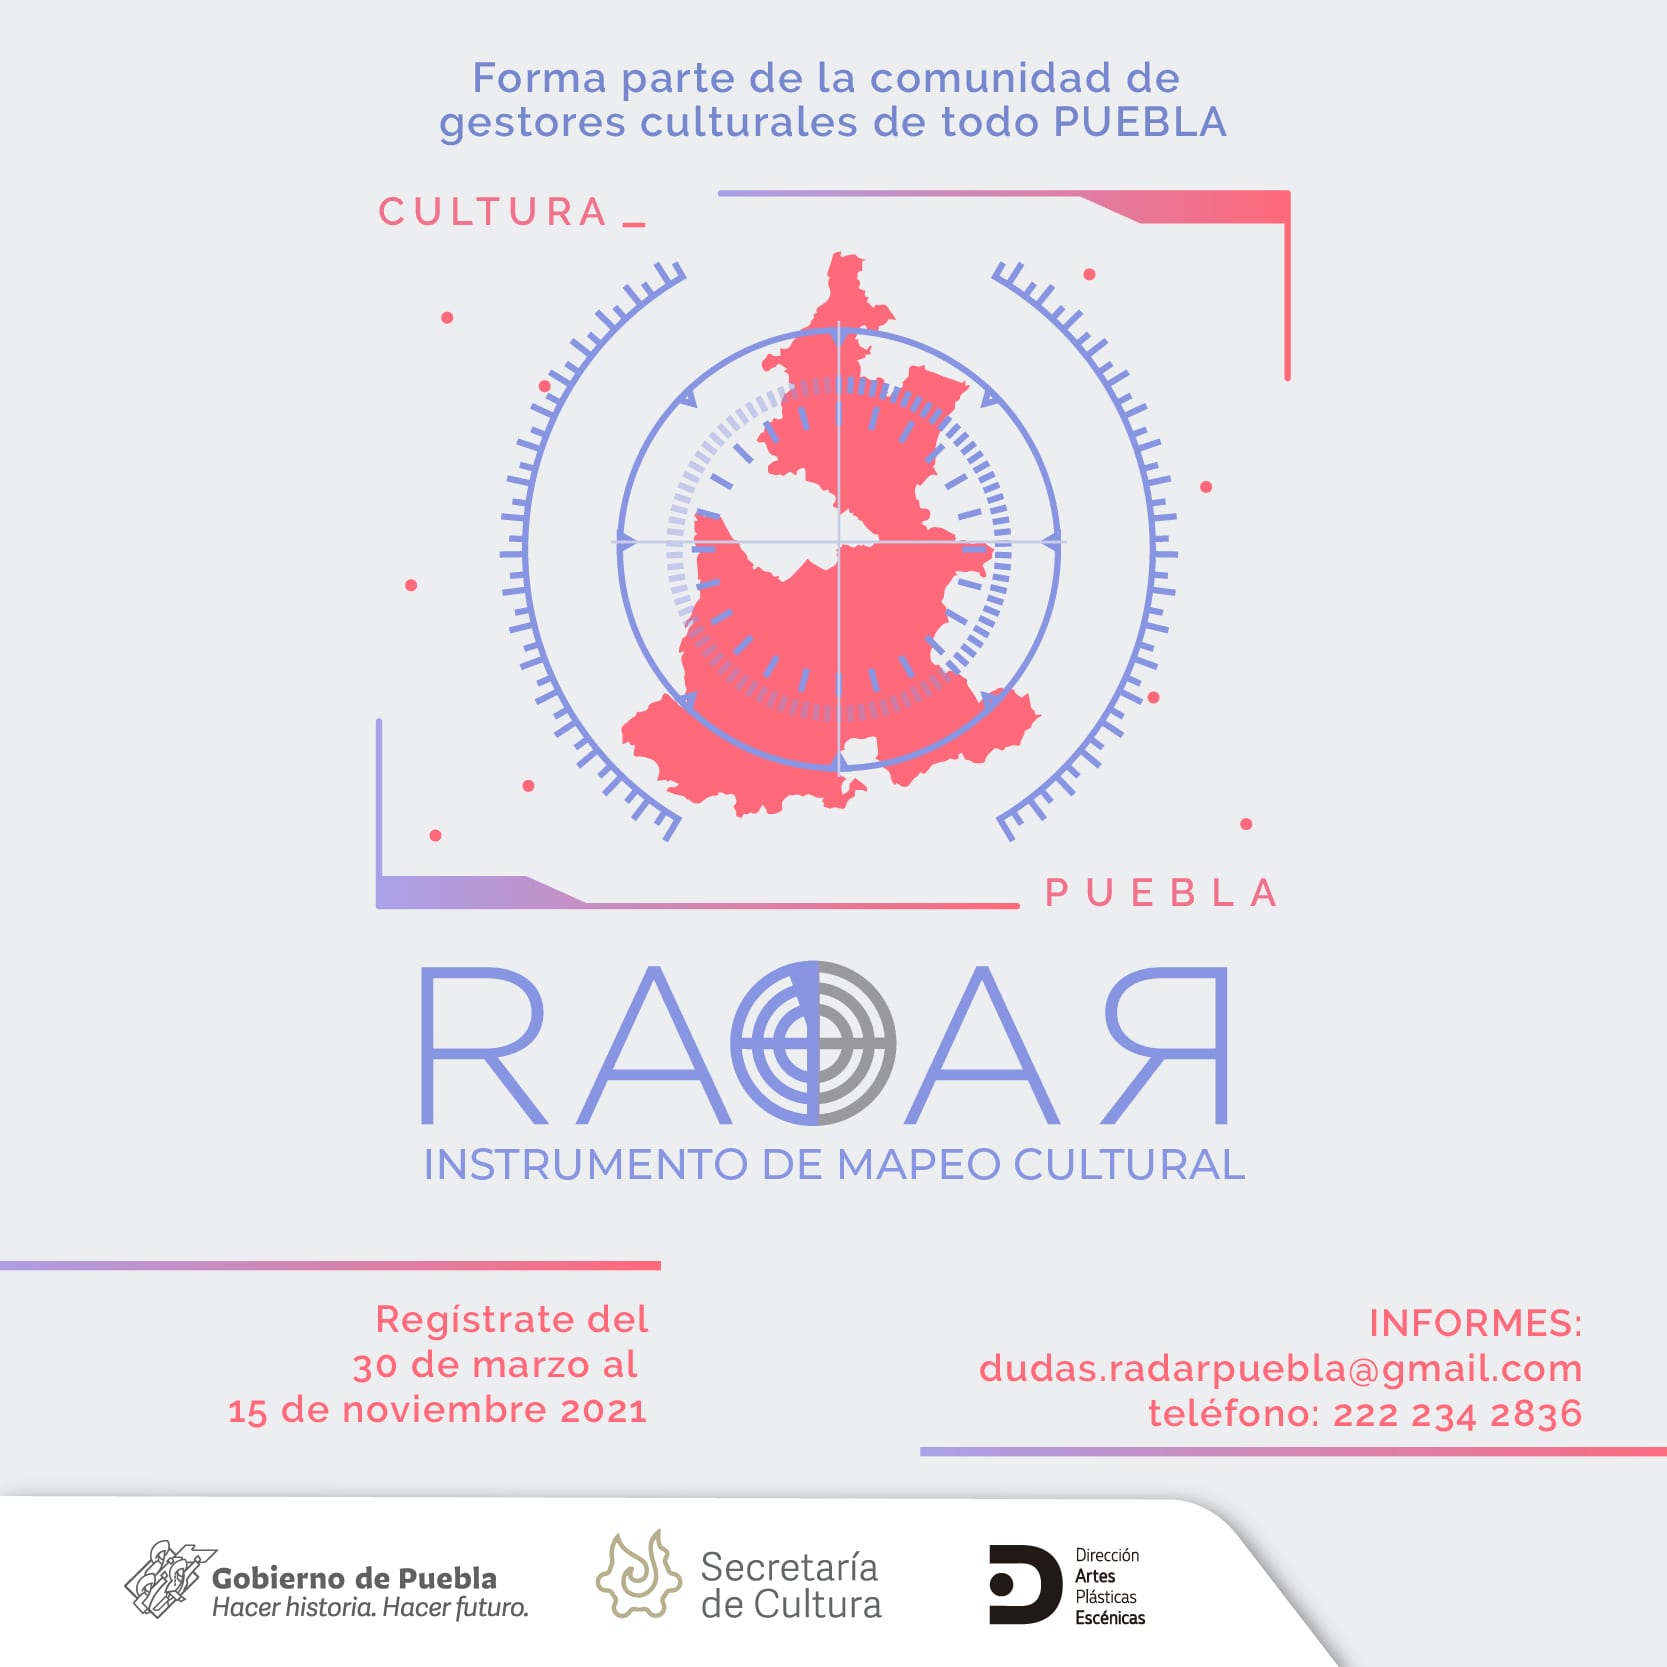 Impulsa Cultura iniciativa “Radar” para identificar propuestas artísticas